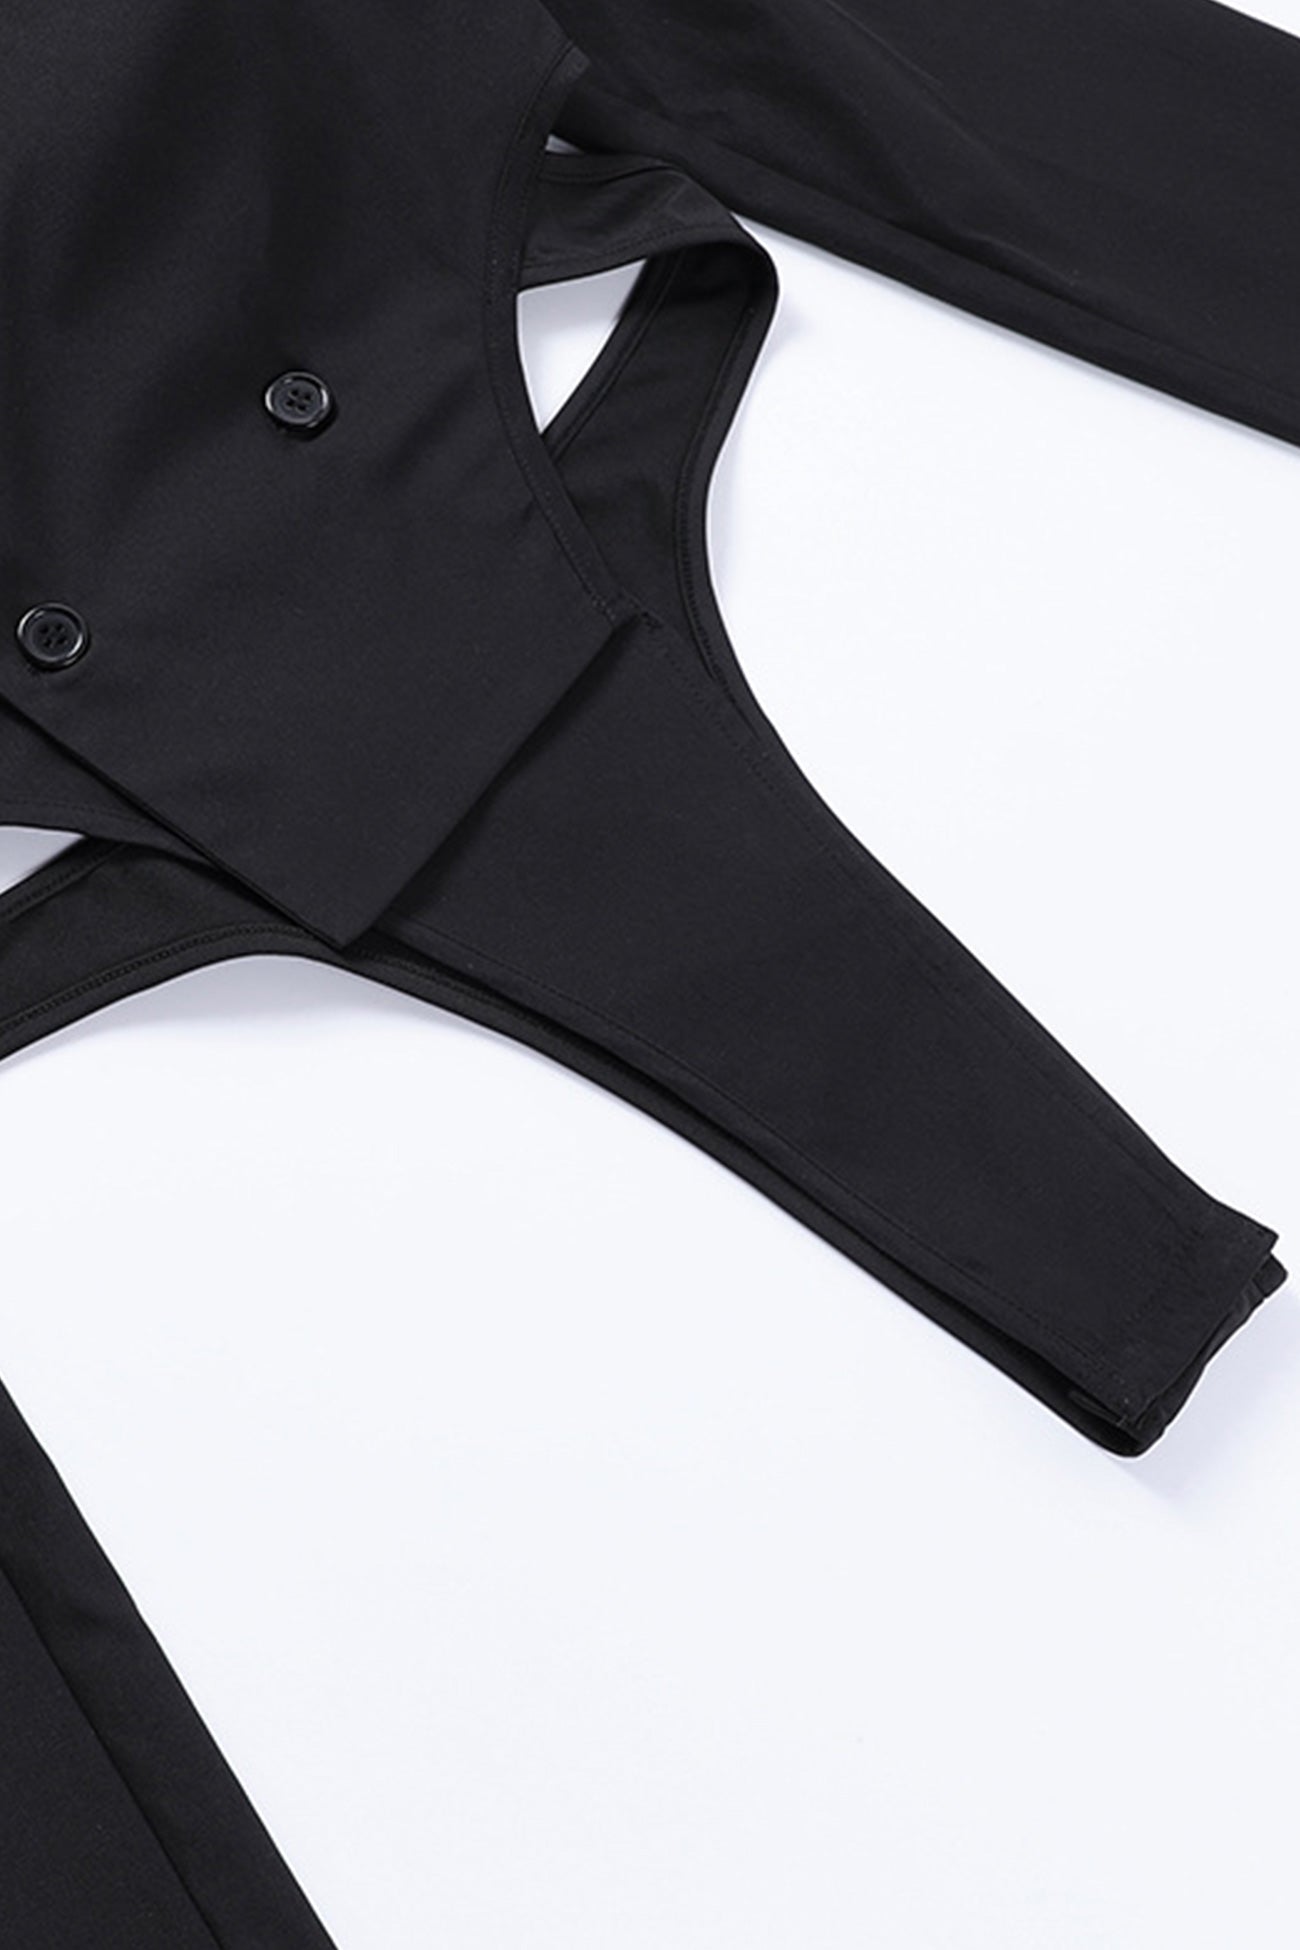 Black Shoulder Pad Suit Tops